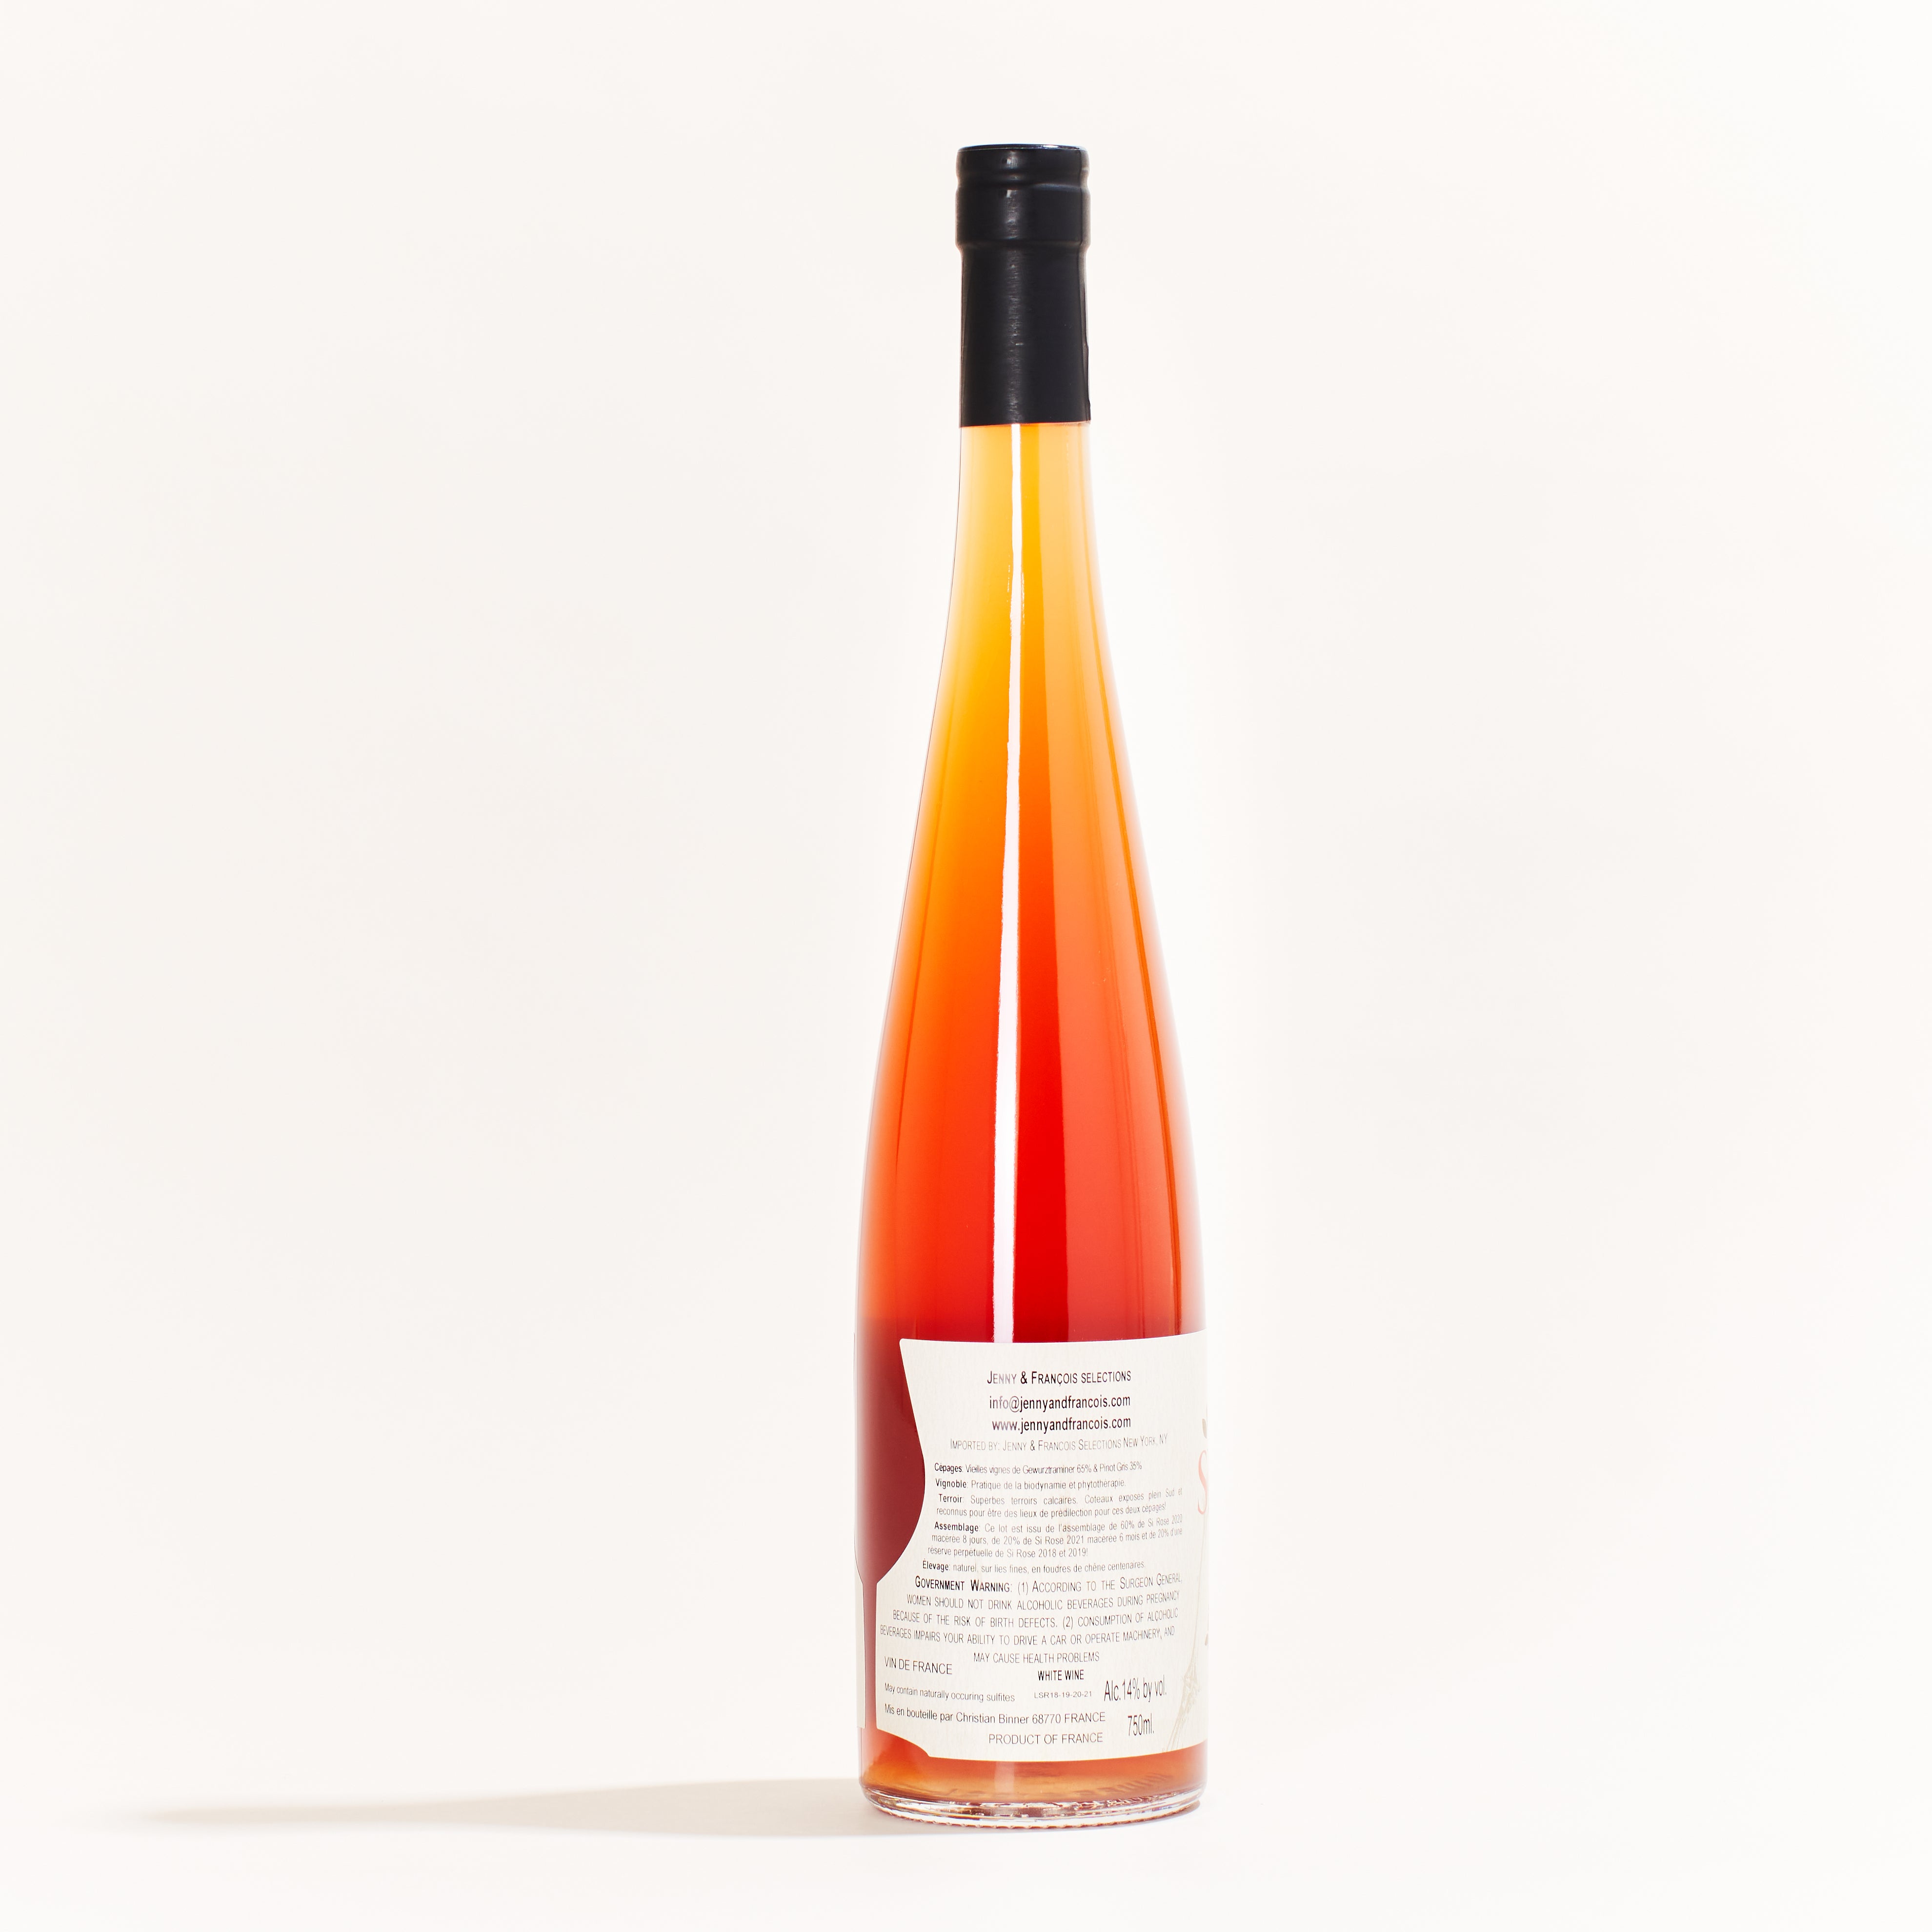 Binner Si Rose Pinot Gris natural orange wine Alsace France back label